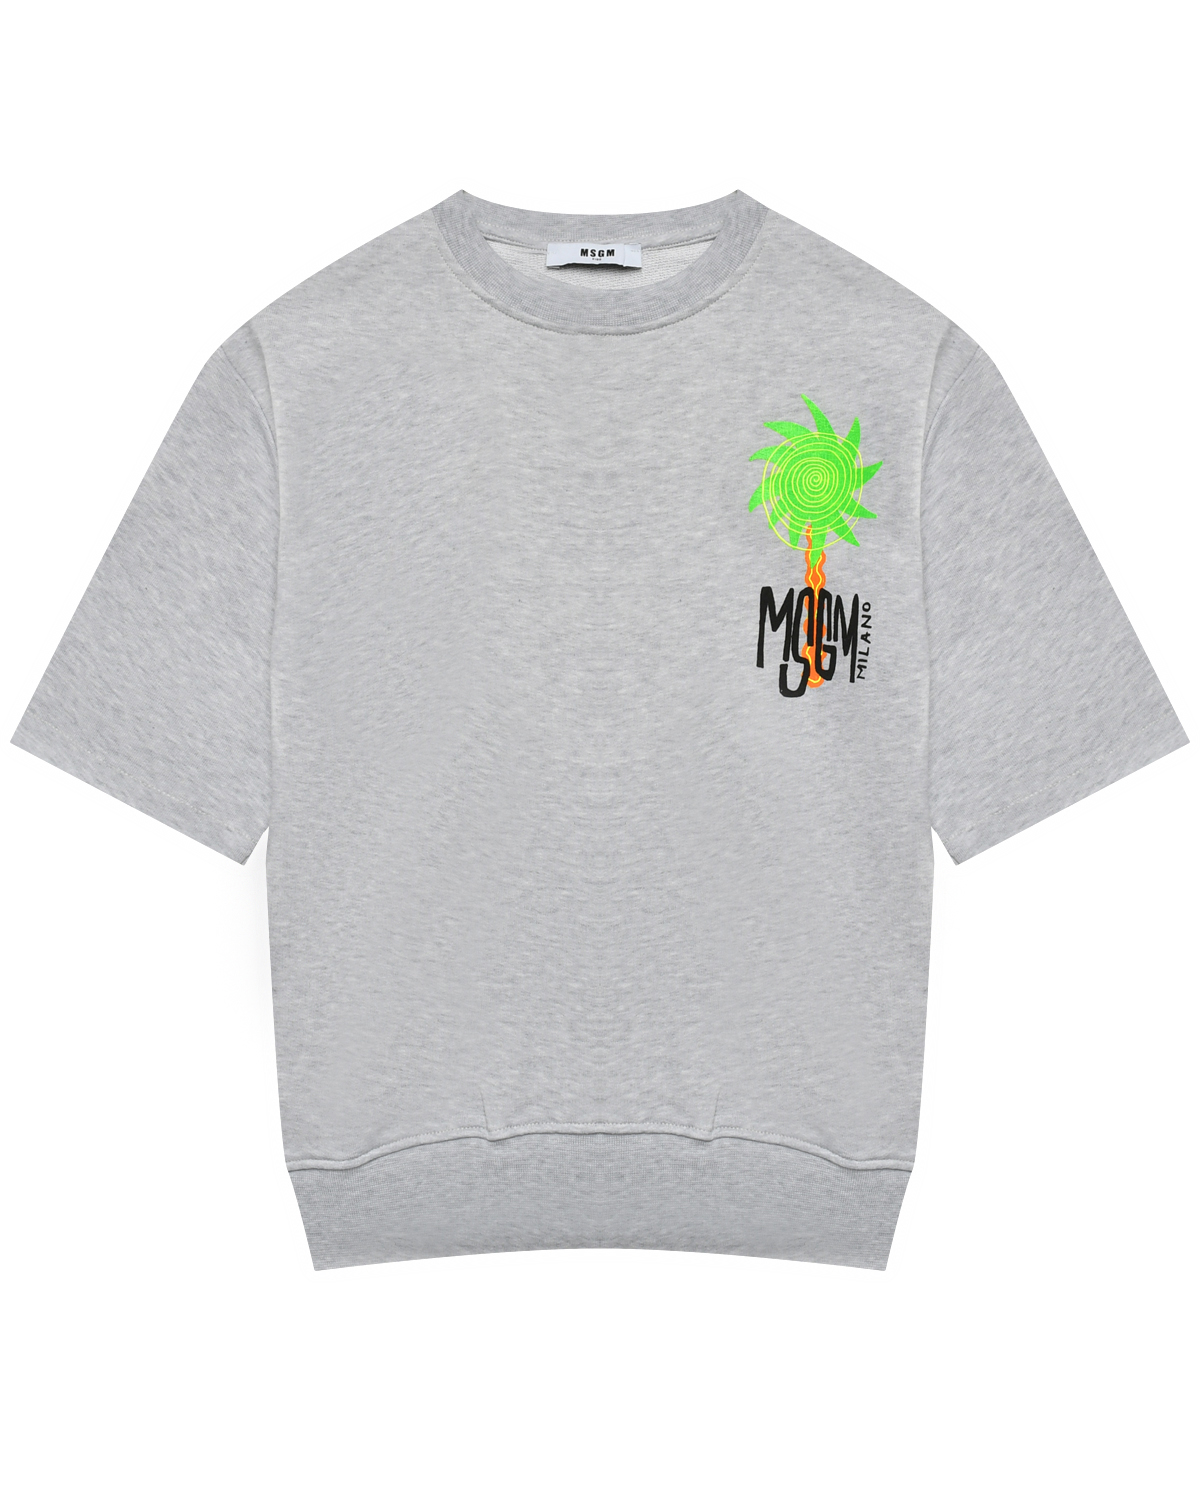 Свитшот с логотипом принт пальмы, серый MSGM свитшот msgm